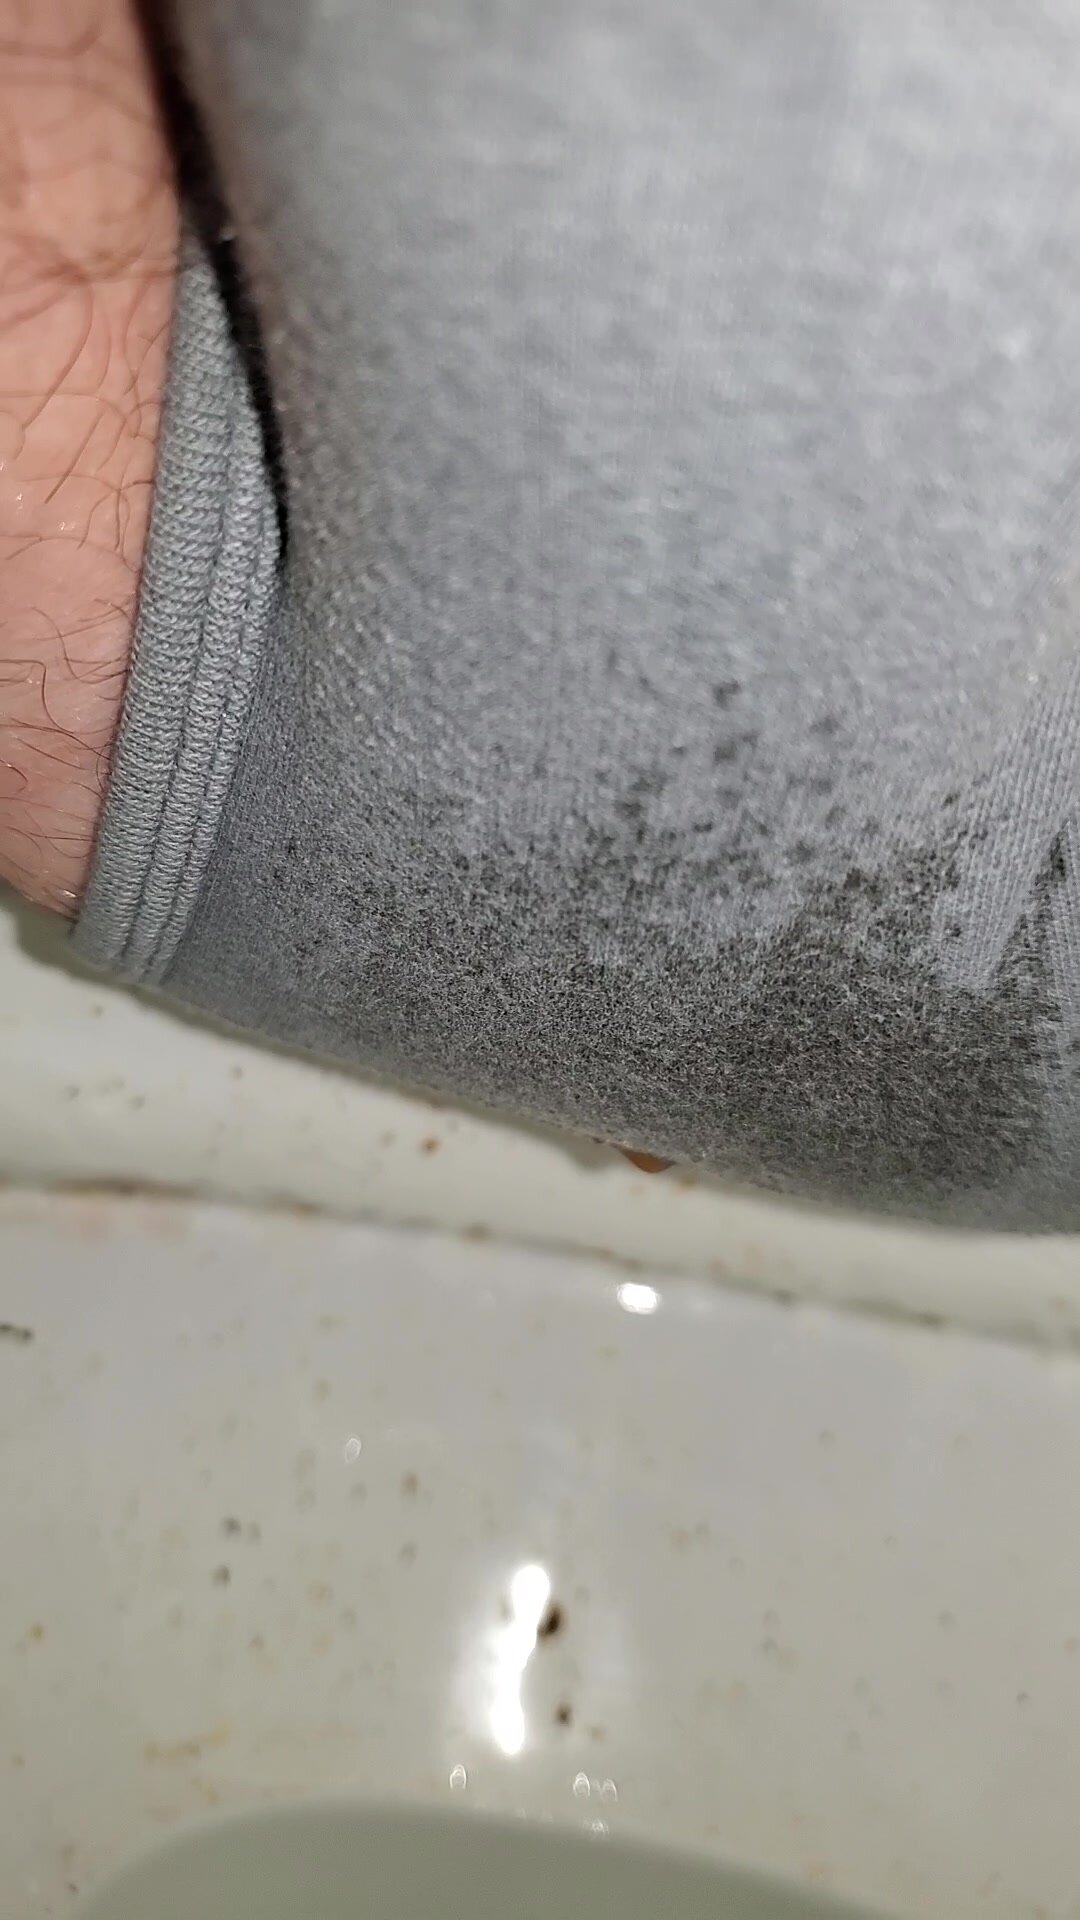 Wet briefs poop